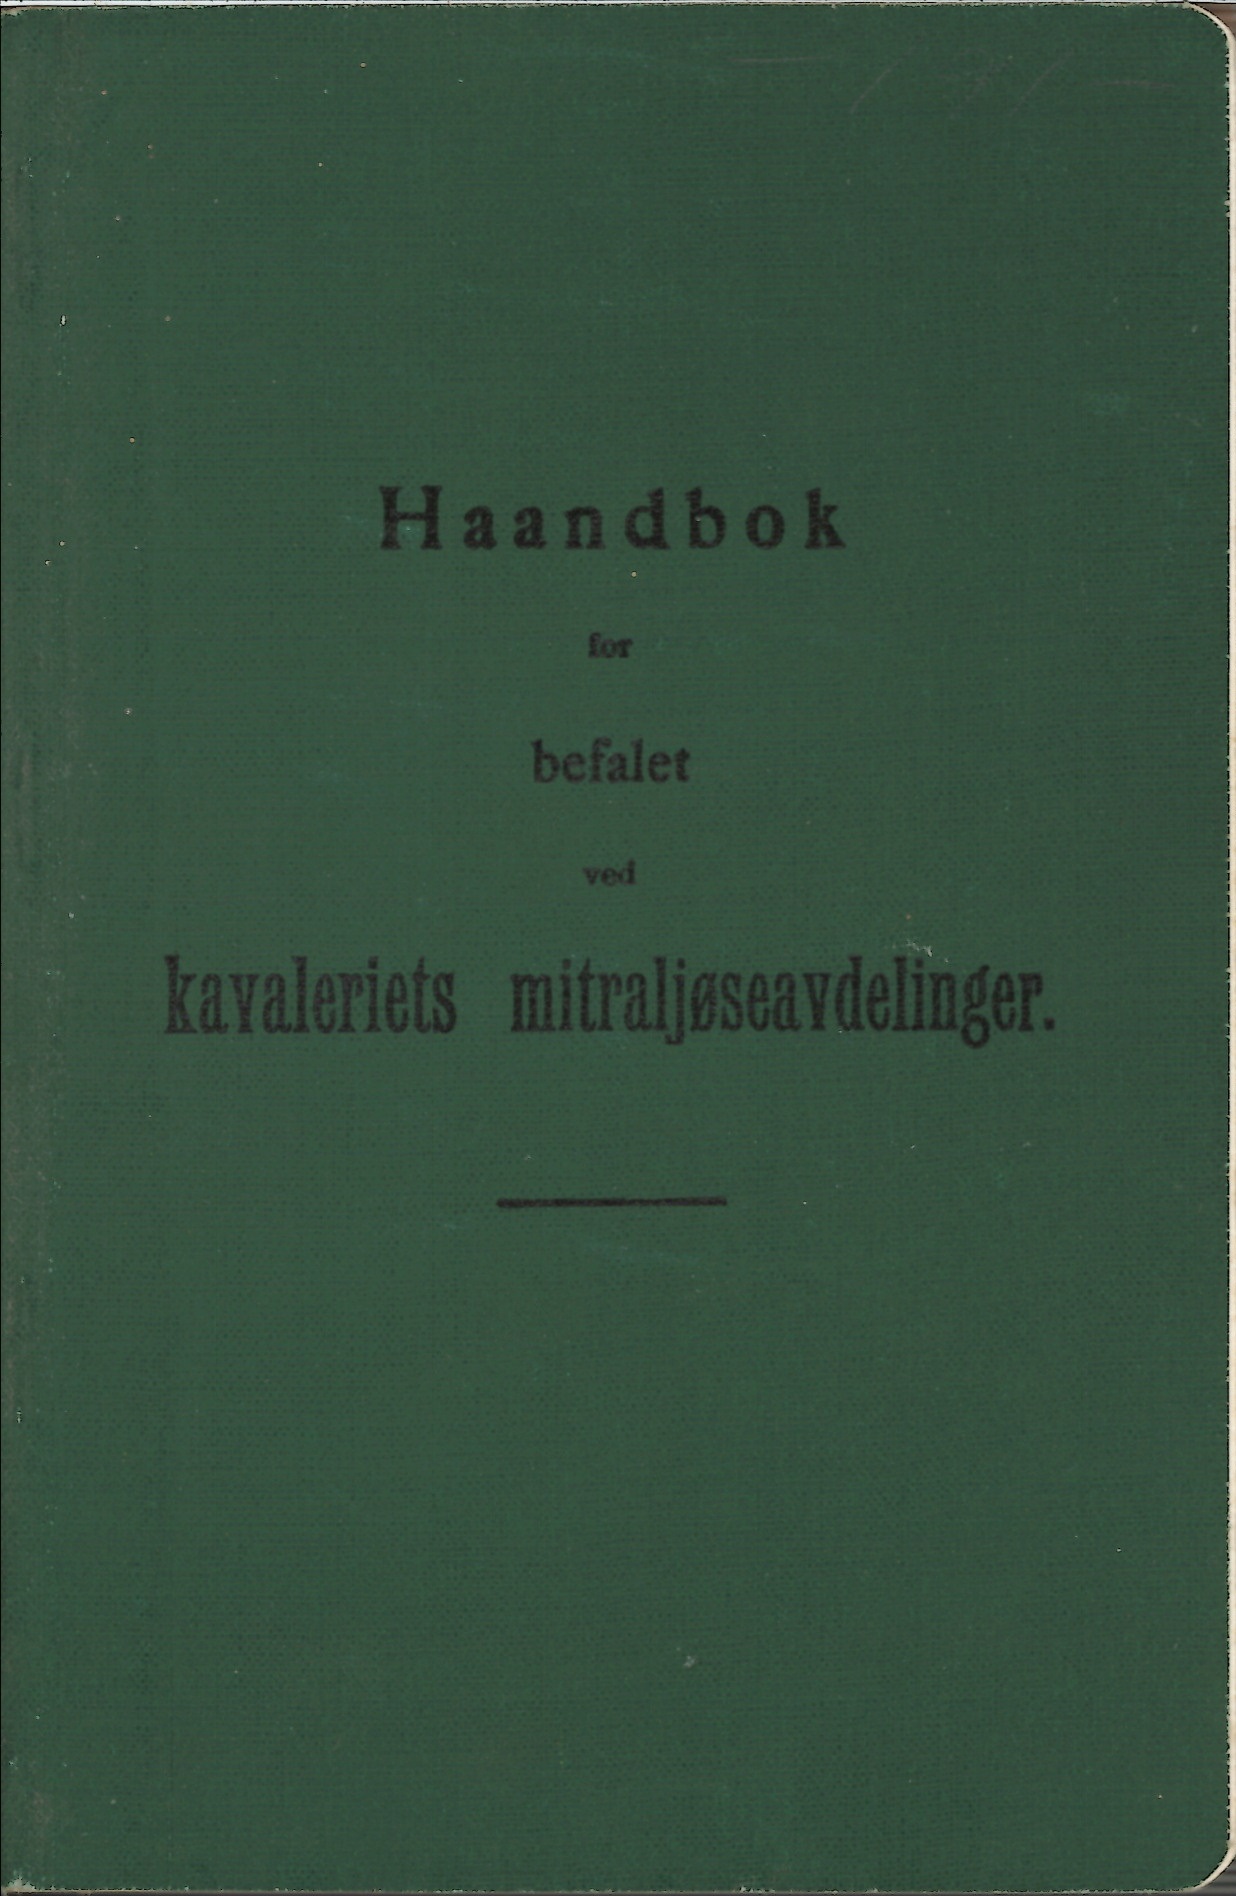 ./doc/reglement/Kav1910/Haandbok-Kav-Mitr-1910-1.jpg